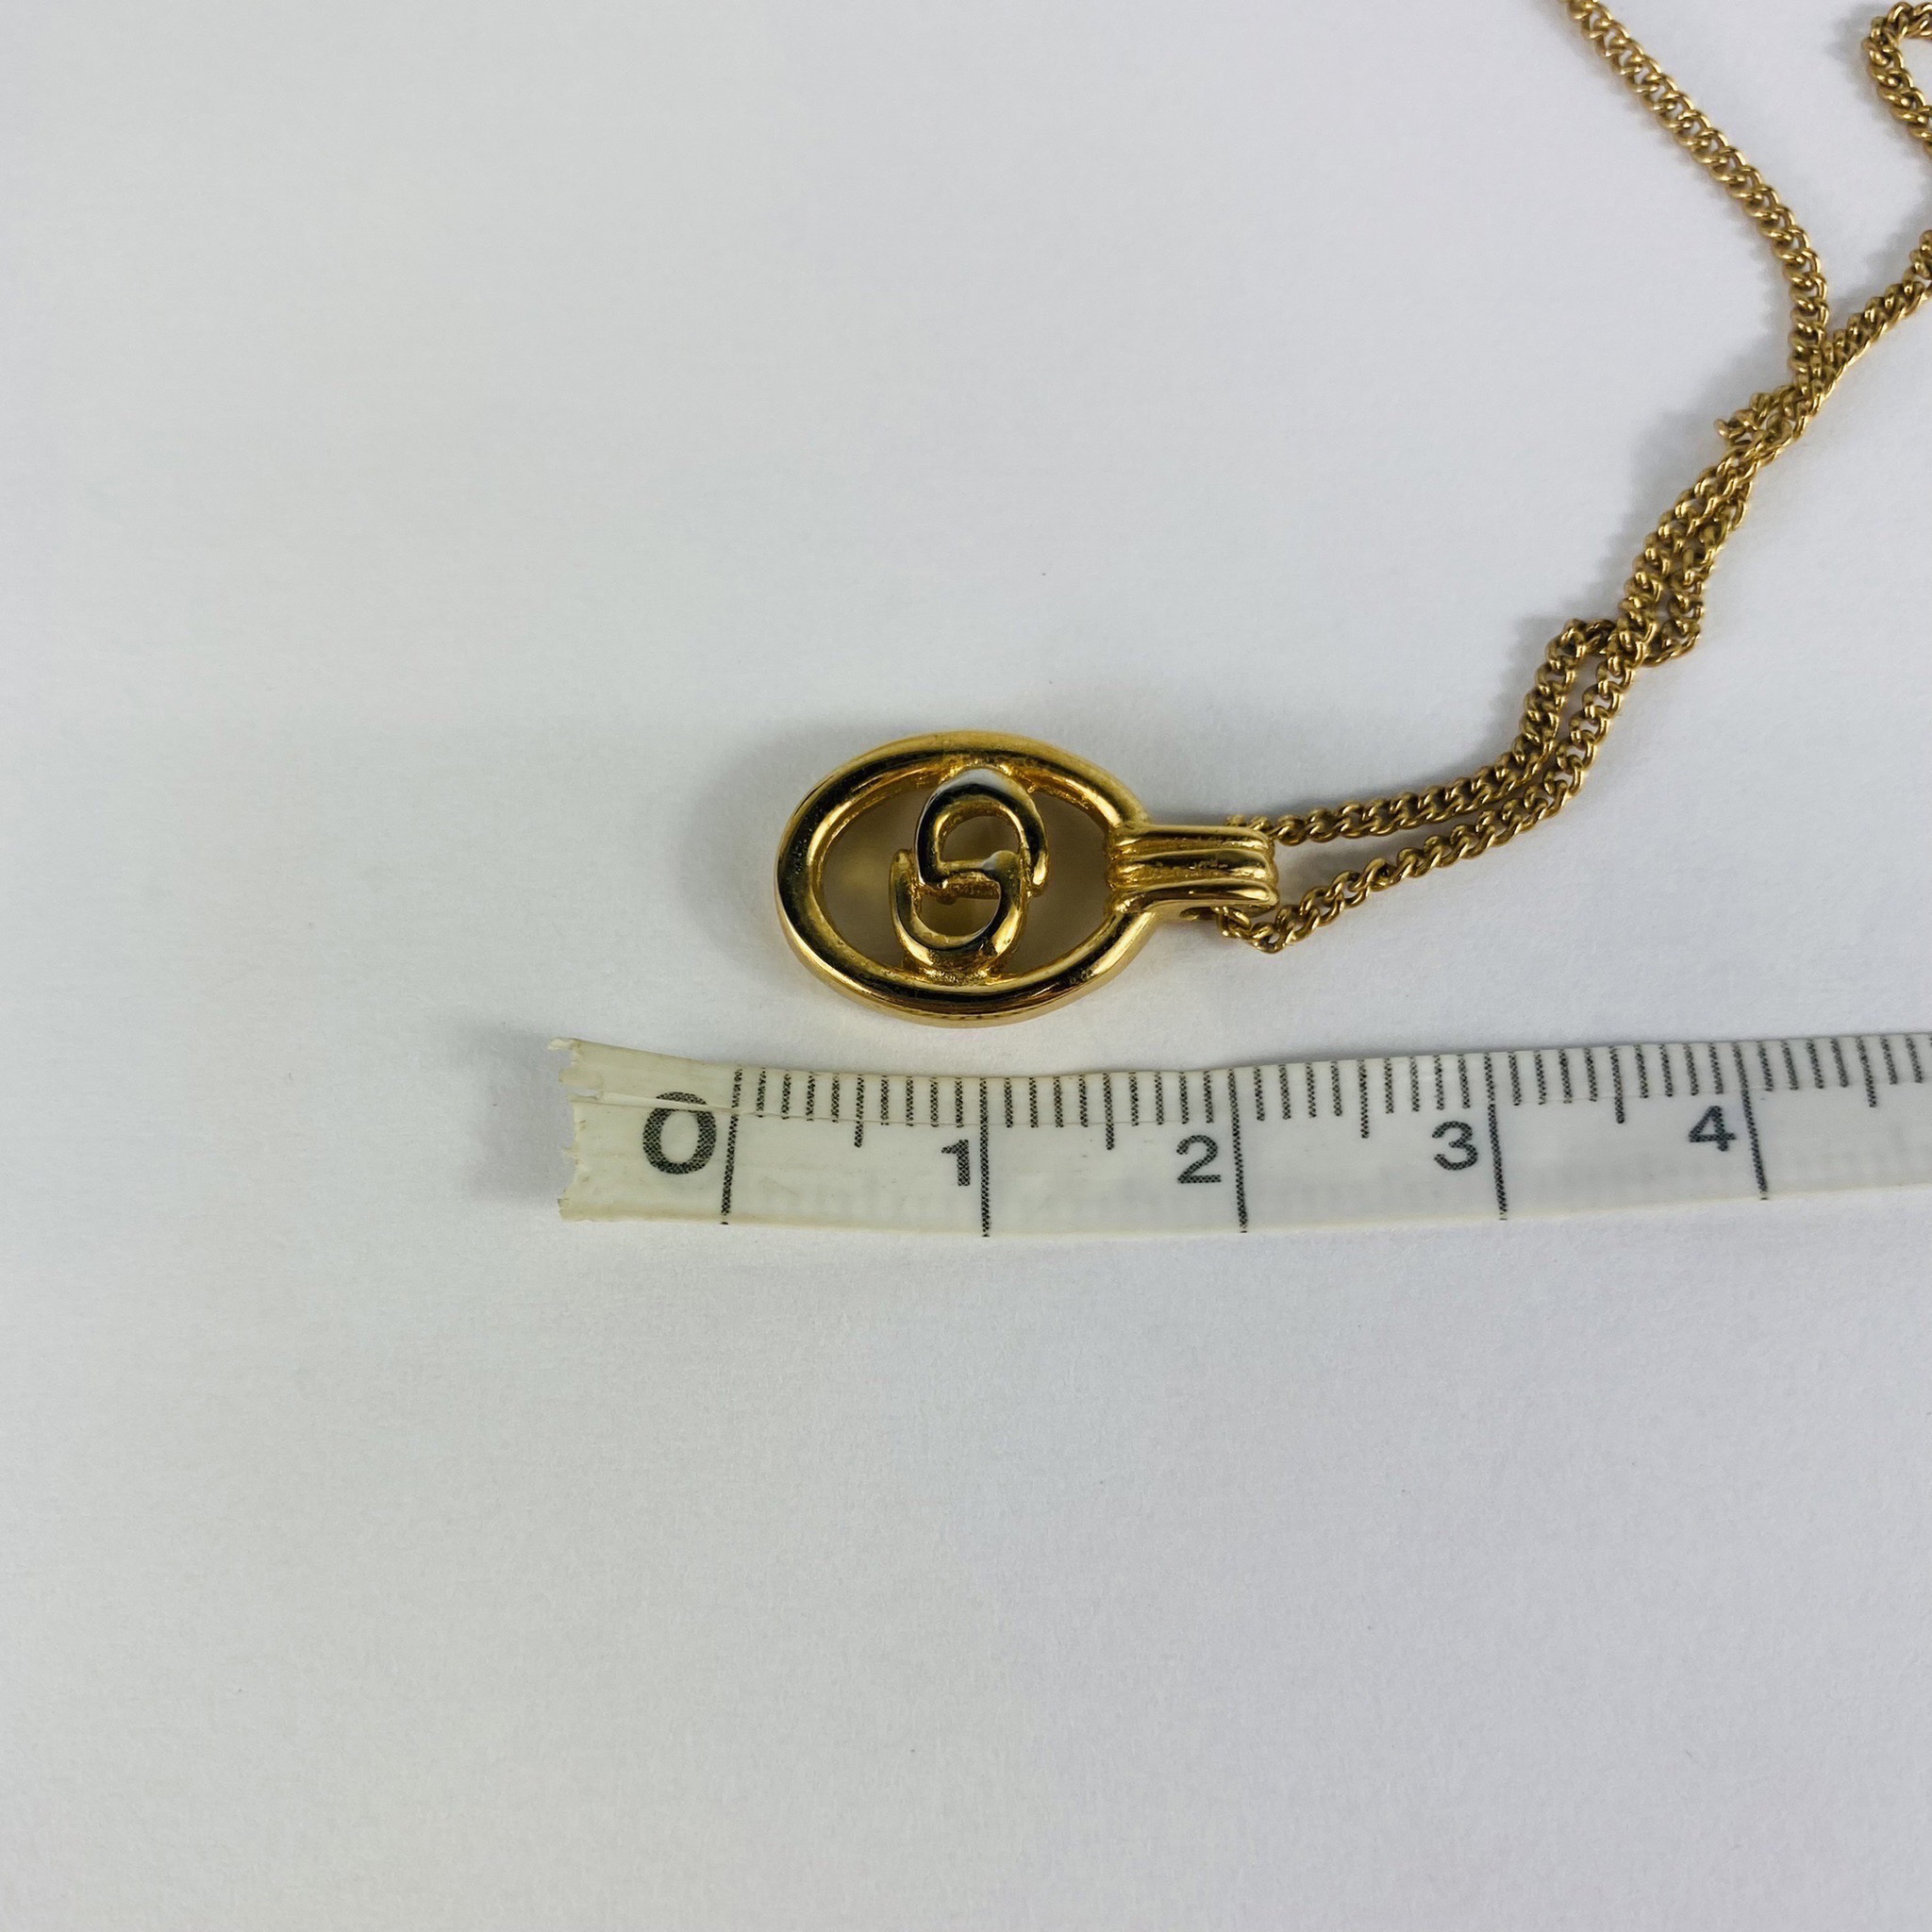 特価販売中 【即日発送】dior クリスチャンディオール　ネックレス　石付き　ゴールド ネックレス